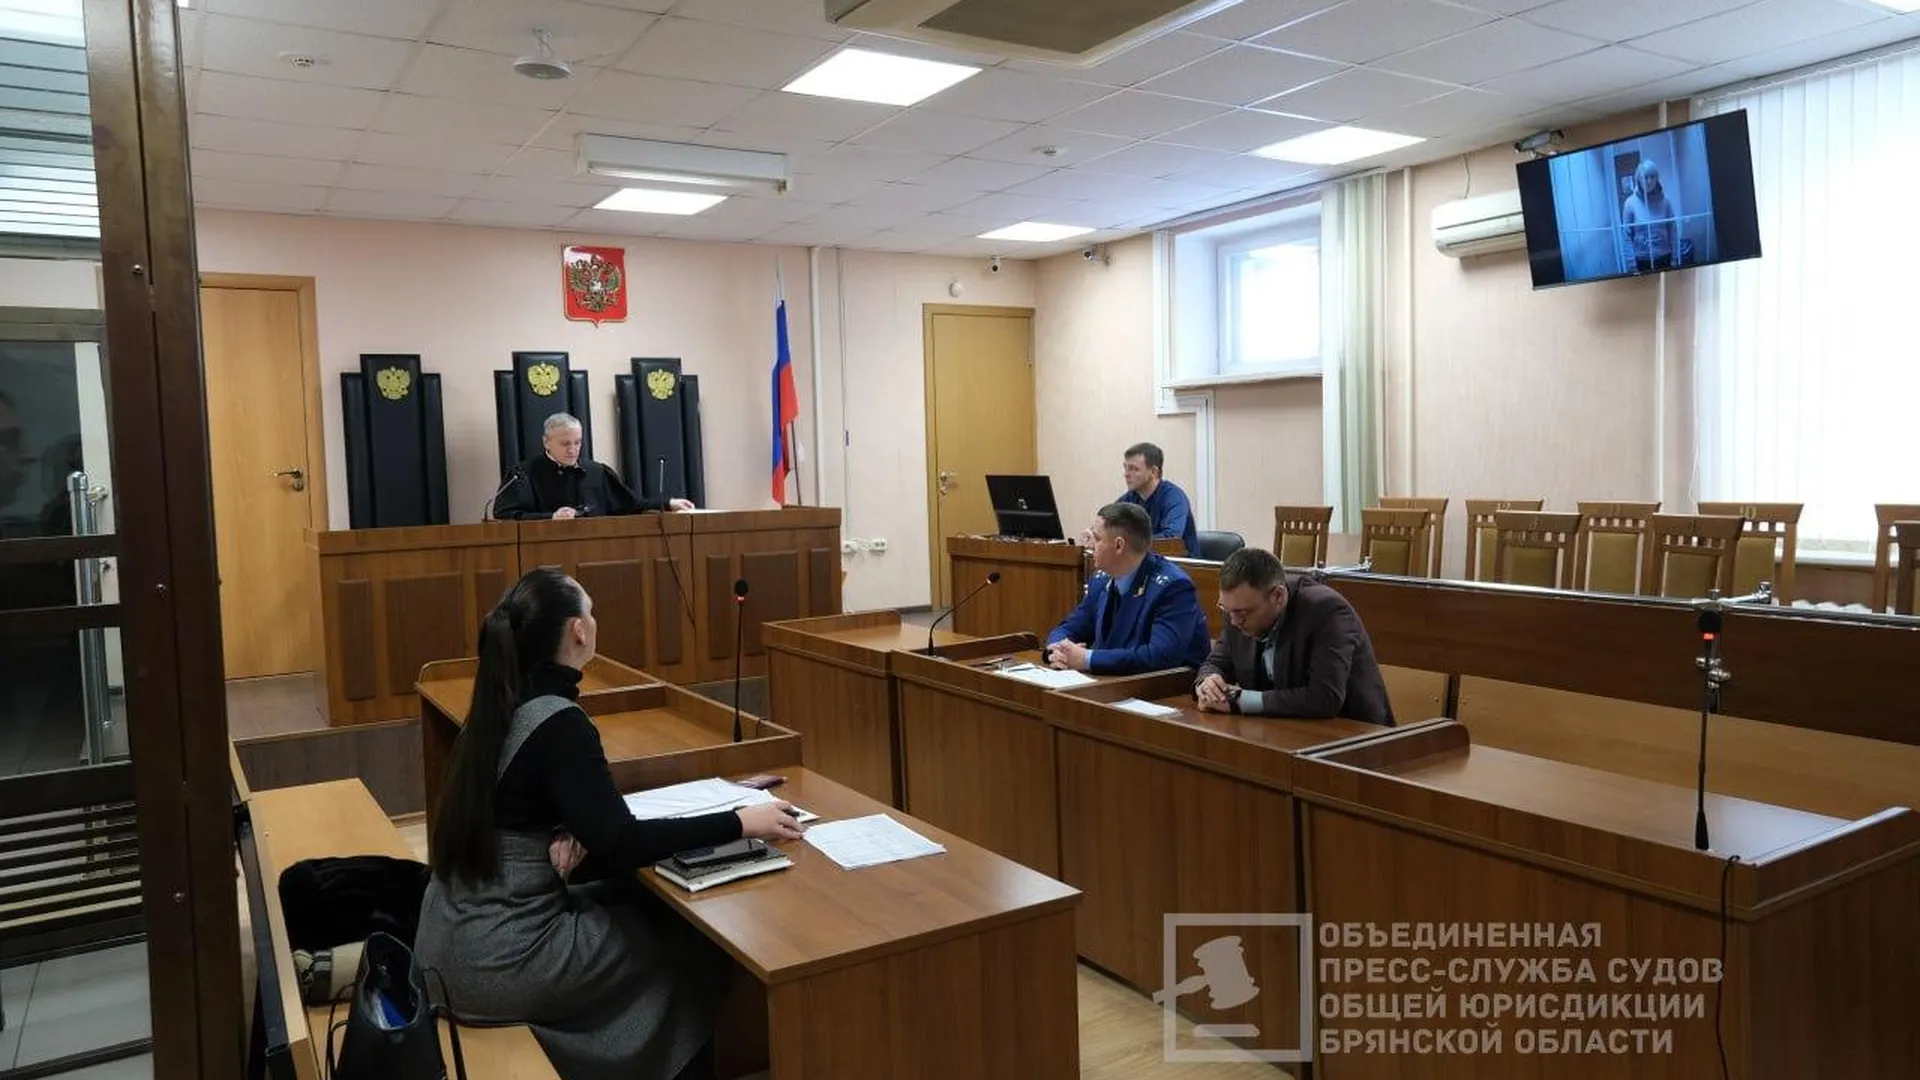 Объединенная пресс-служба судов общей юрисдикции Брянской области